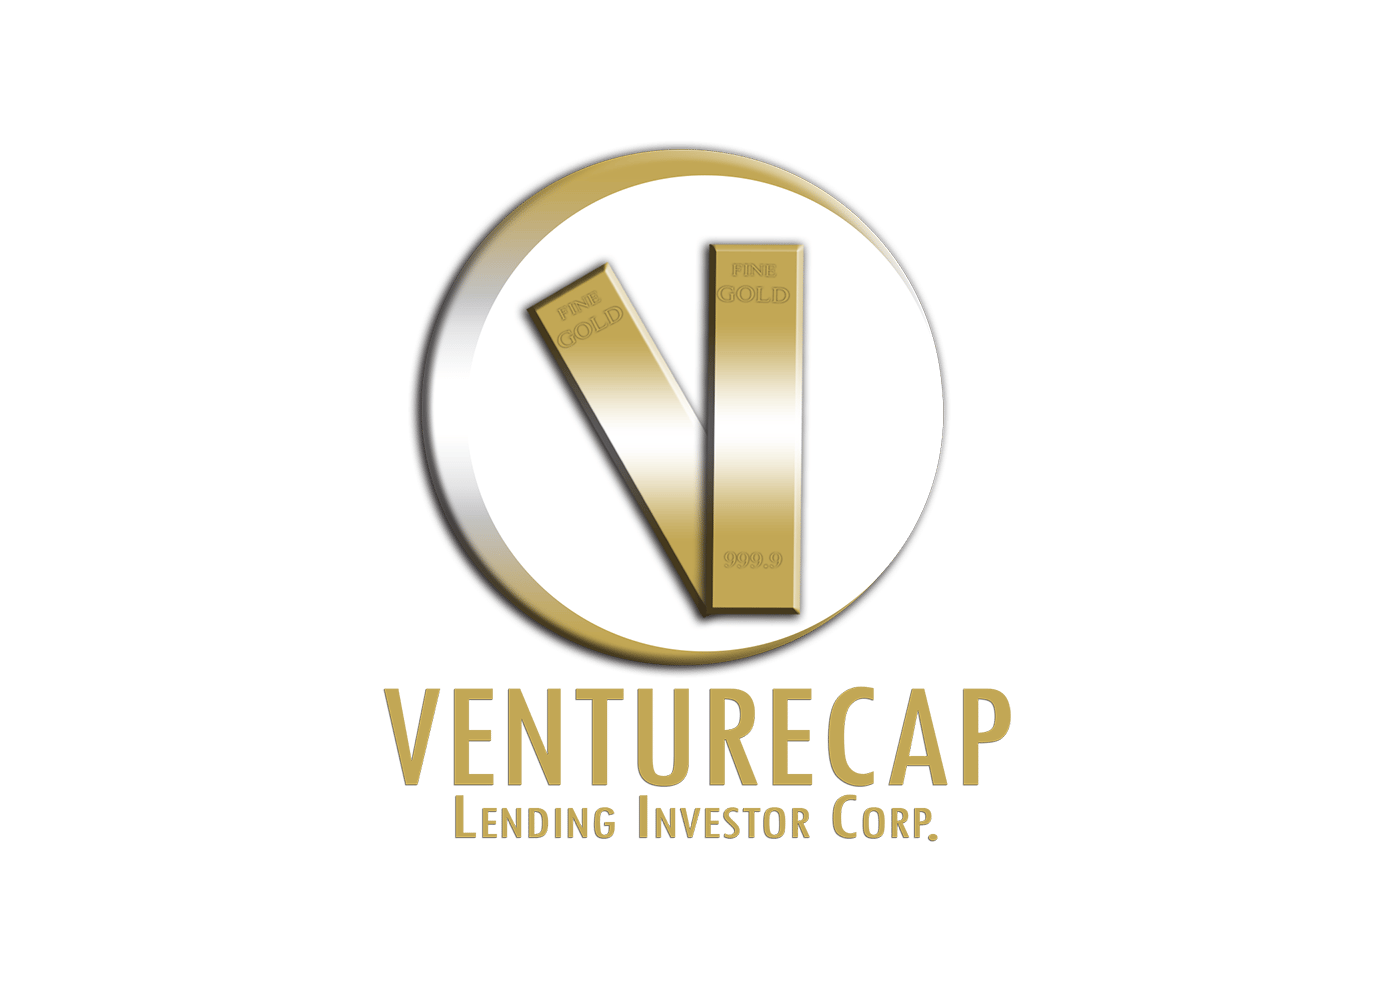 Venturecap